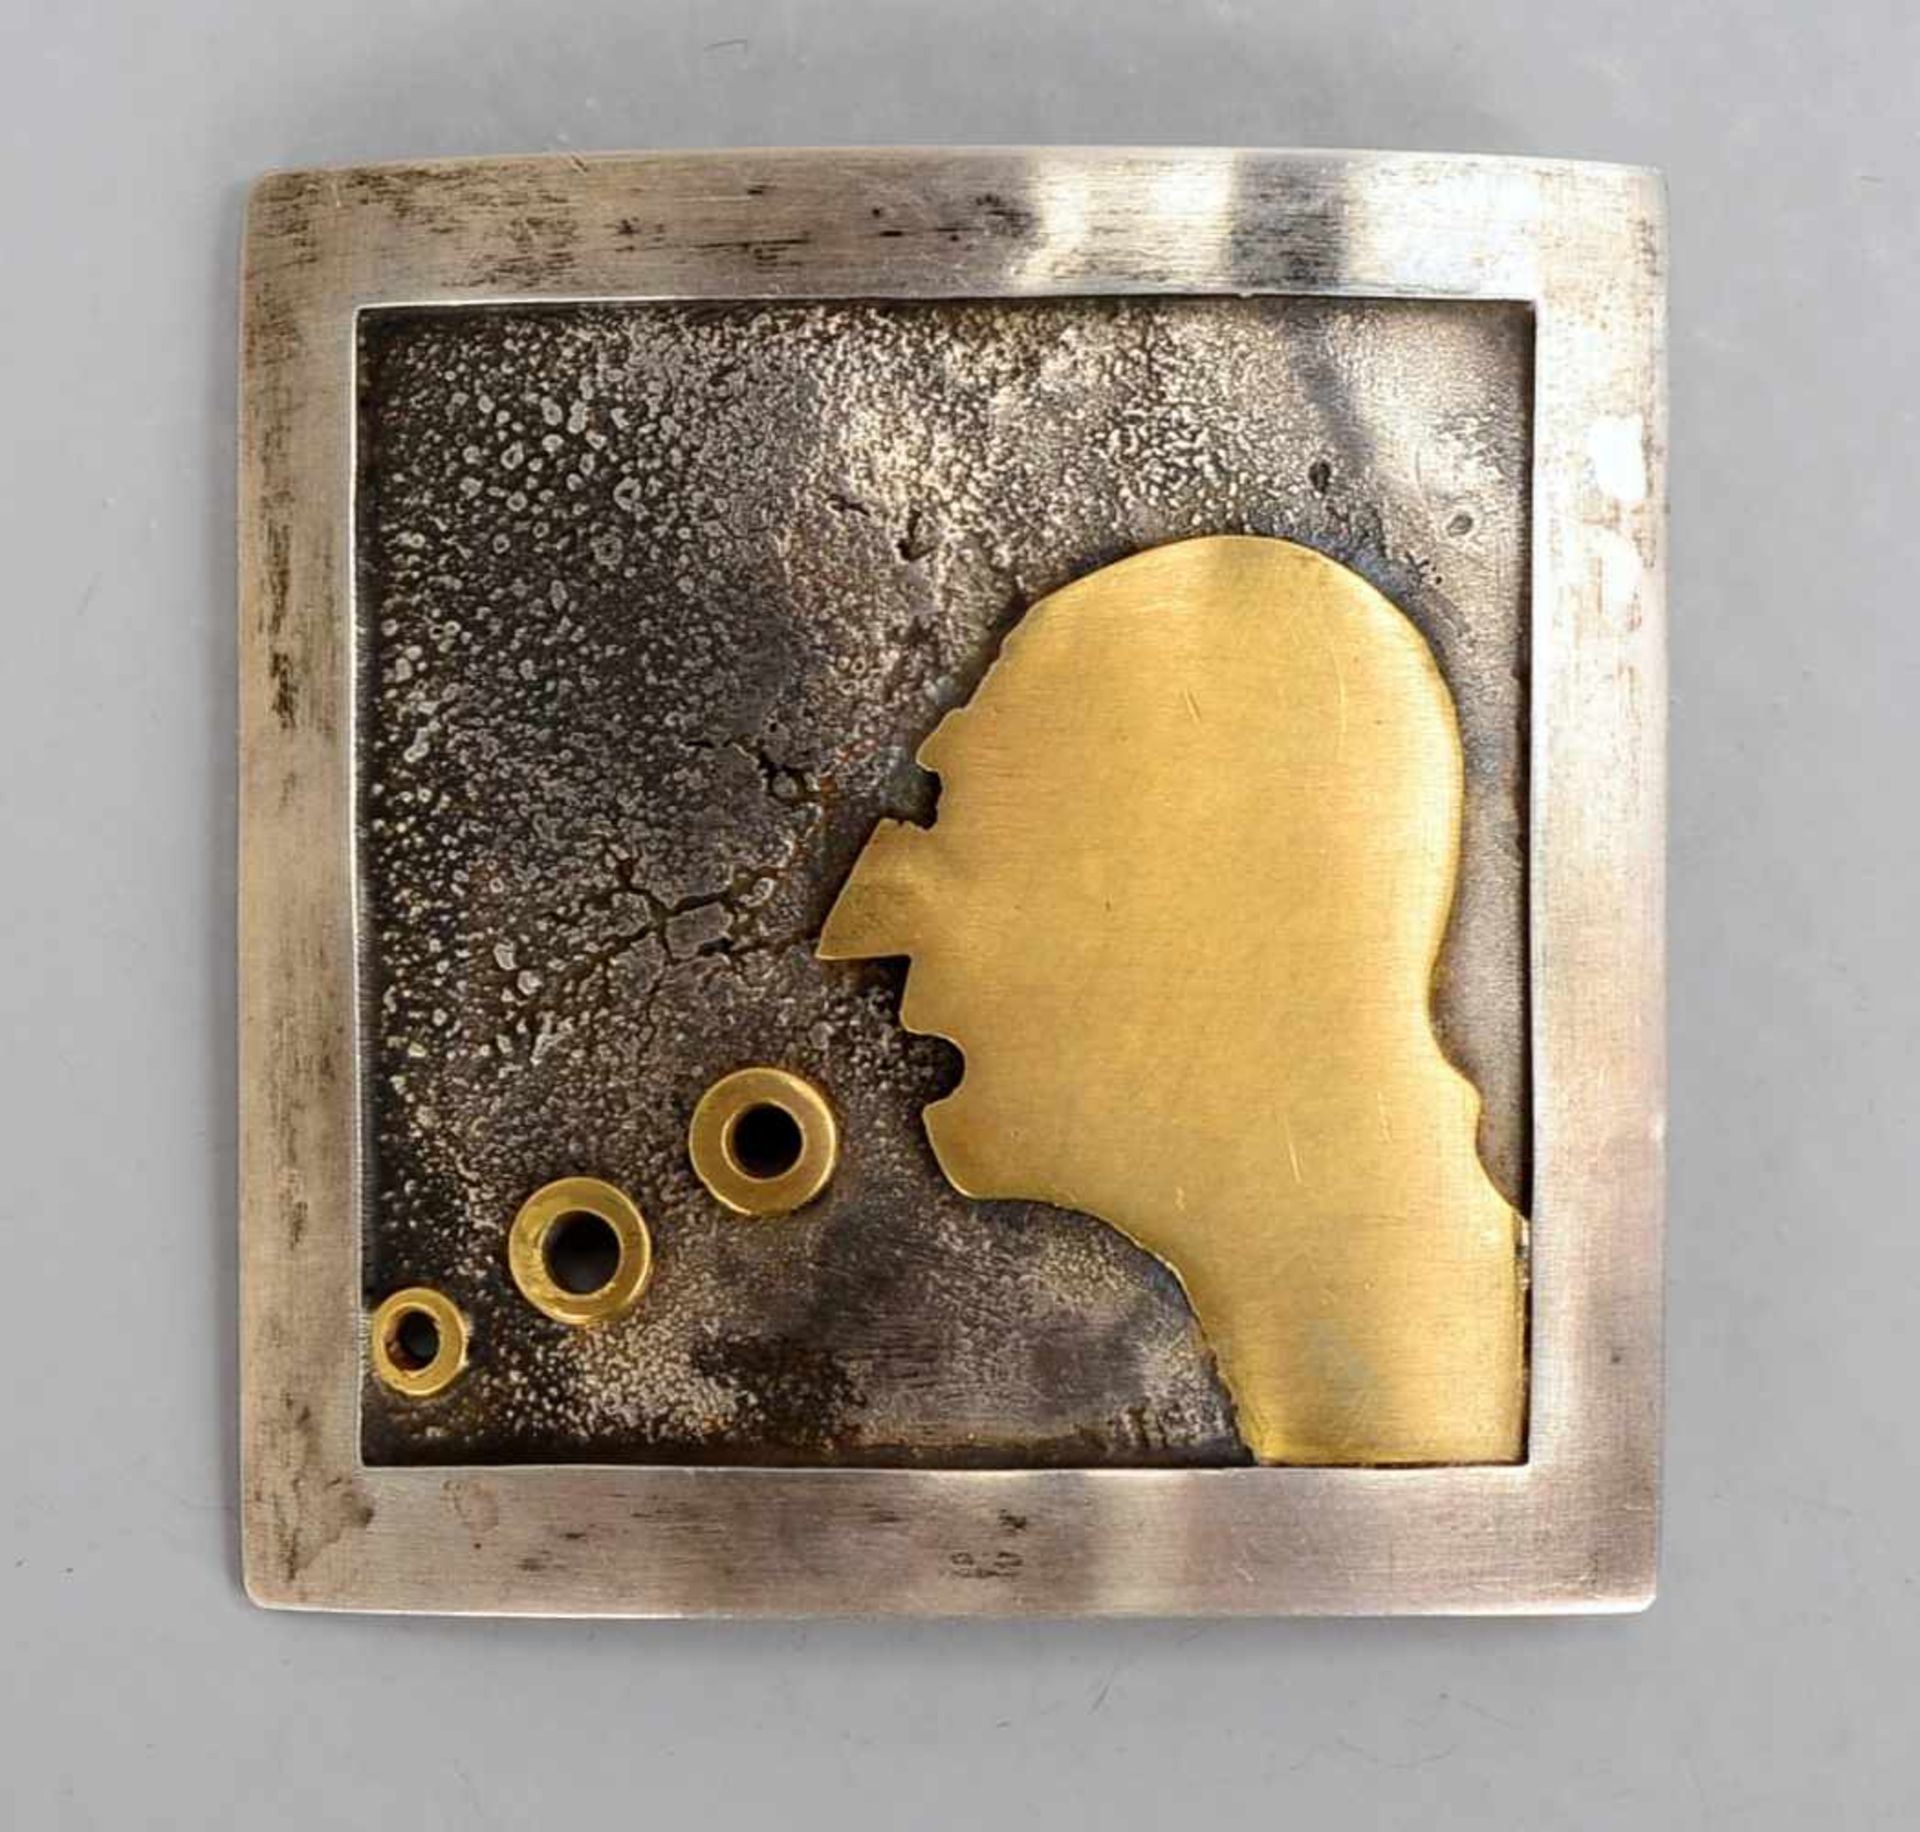 Brosche (Worpsweder Goldschmiedearbeit), Silber und Gold; Maße 5,5 x 5,5 cm, Gewicht 33,14 g